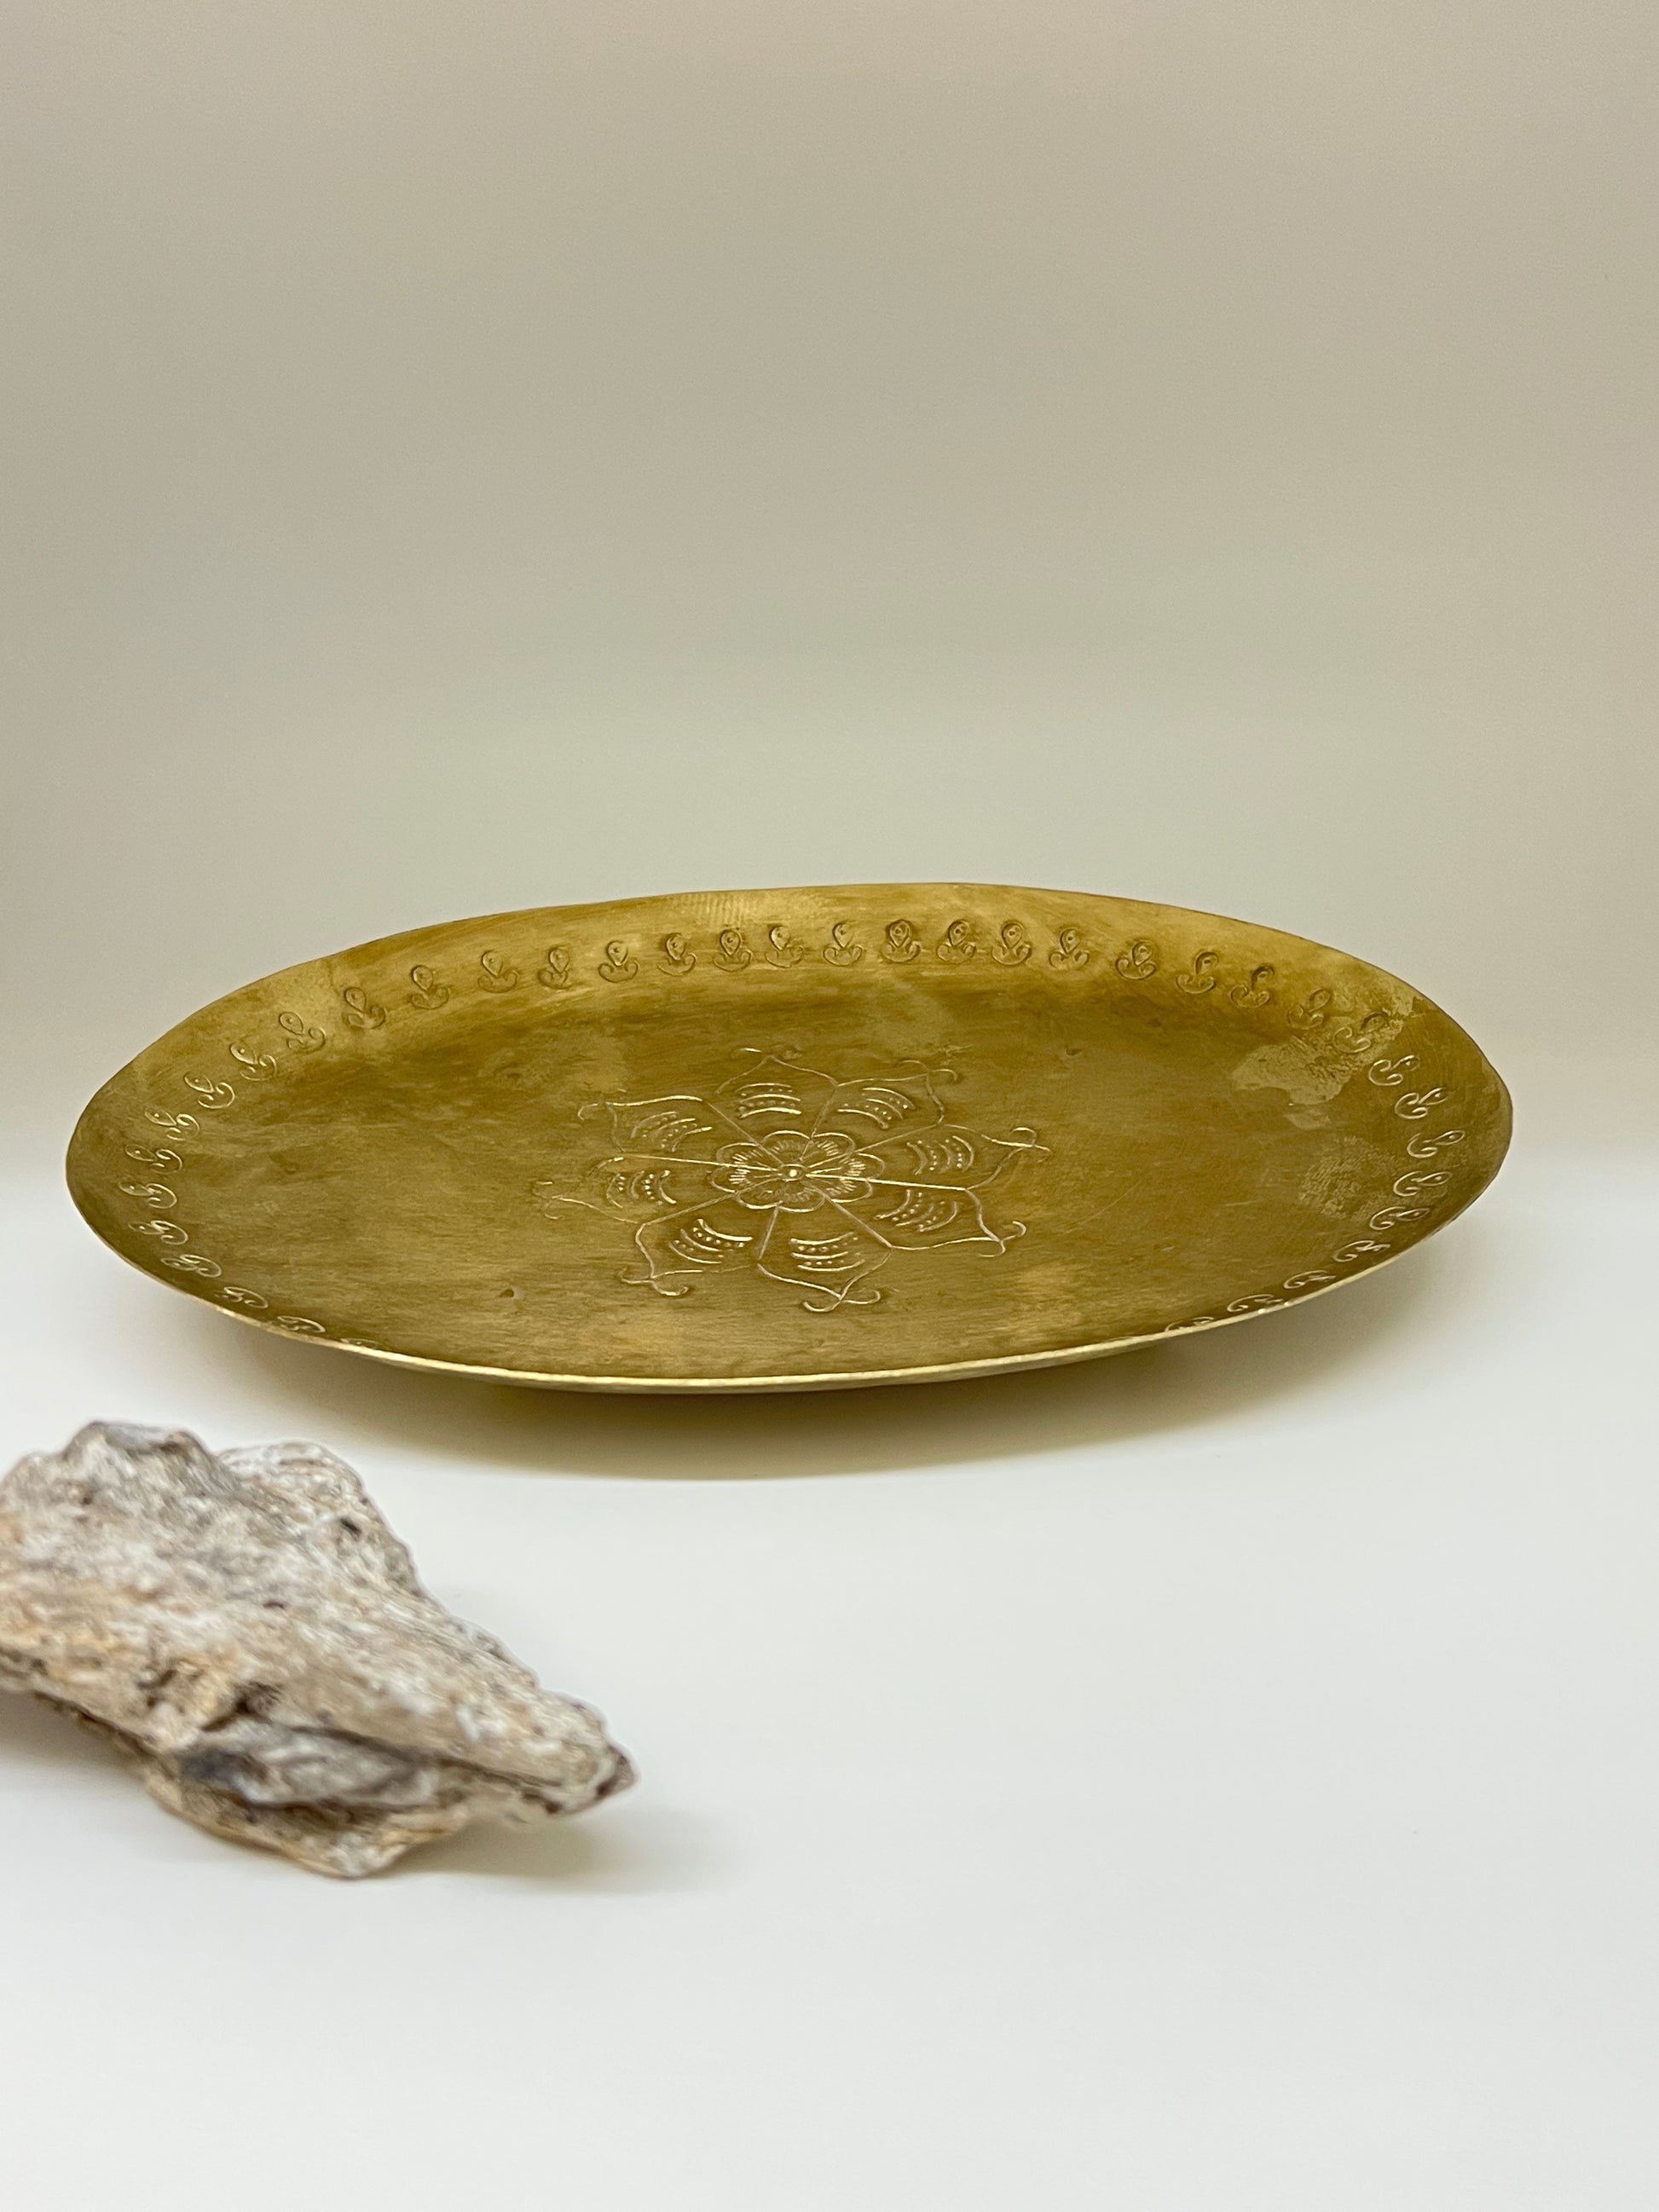 Assiette Ovale métallique antique Fait main en Inde décorationAssiette Ovale métallique antique Fait main en Inde décoration